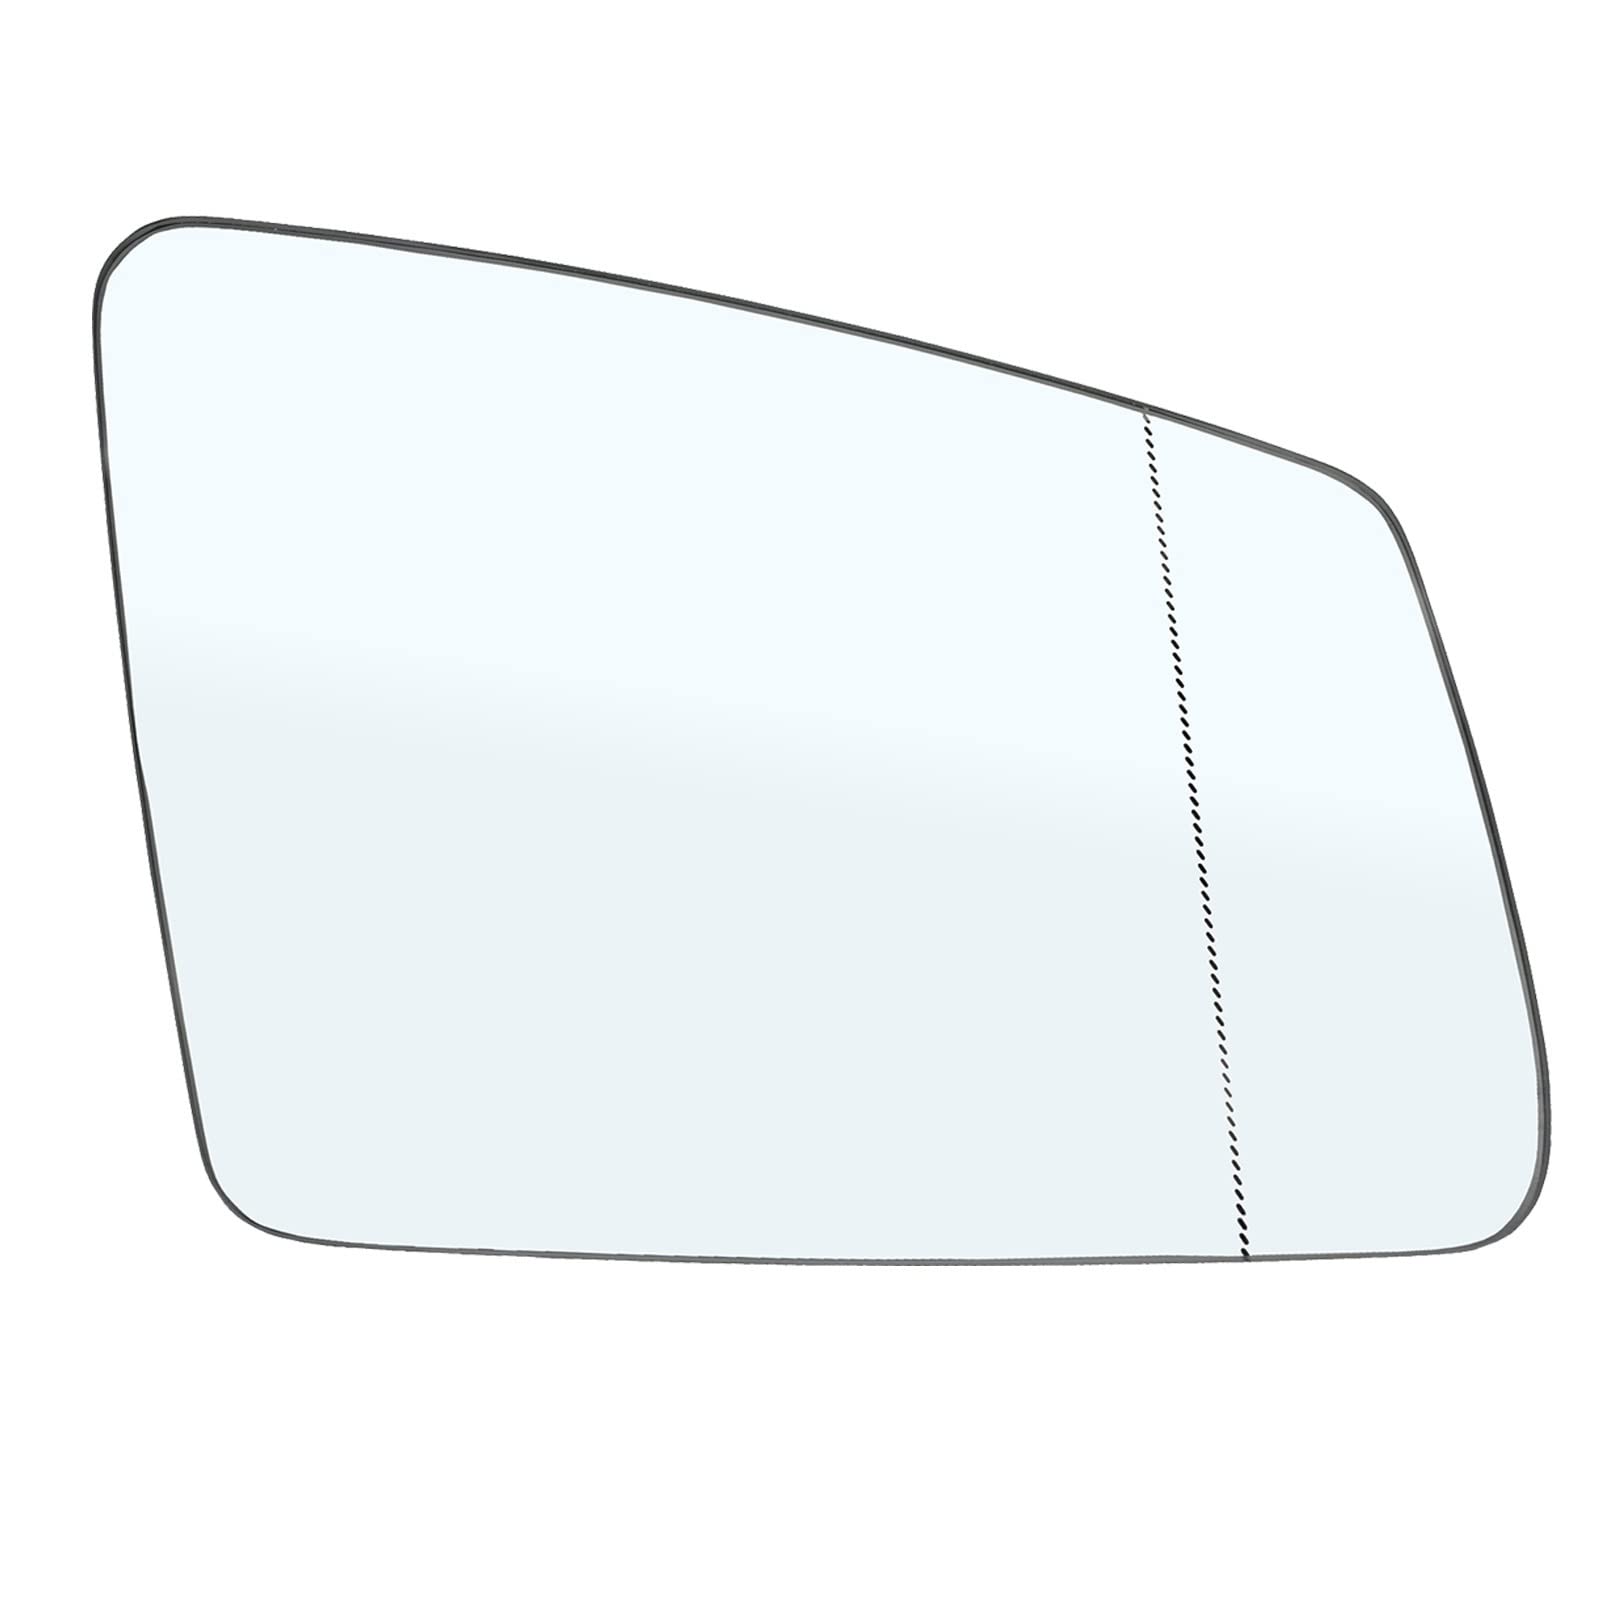 Seitenspiegelglas Für Benz C200 E200 E250 E300 E400 E500 Linke Und Rechte Seite Beheizter Außenspiegel Rückspiegel Rückspiegelglas Außenspiegel Glas (Größe : Recht) von roushi